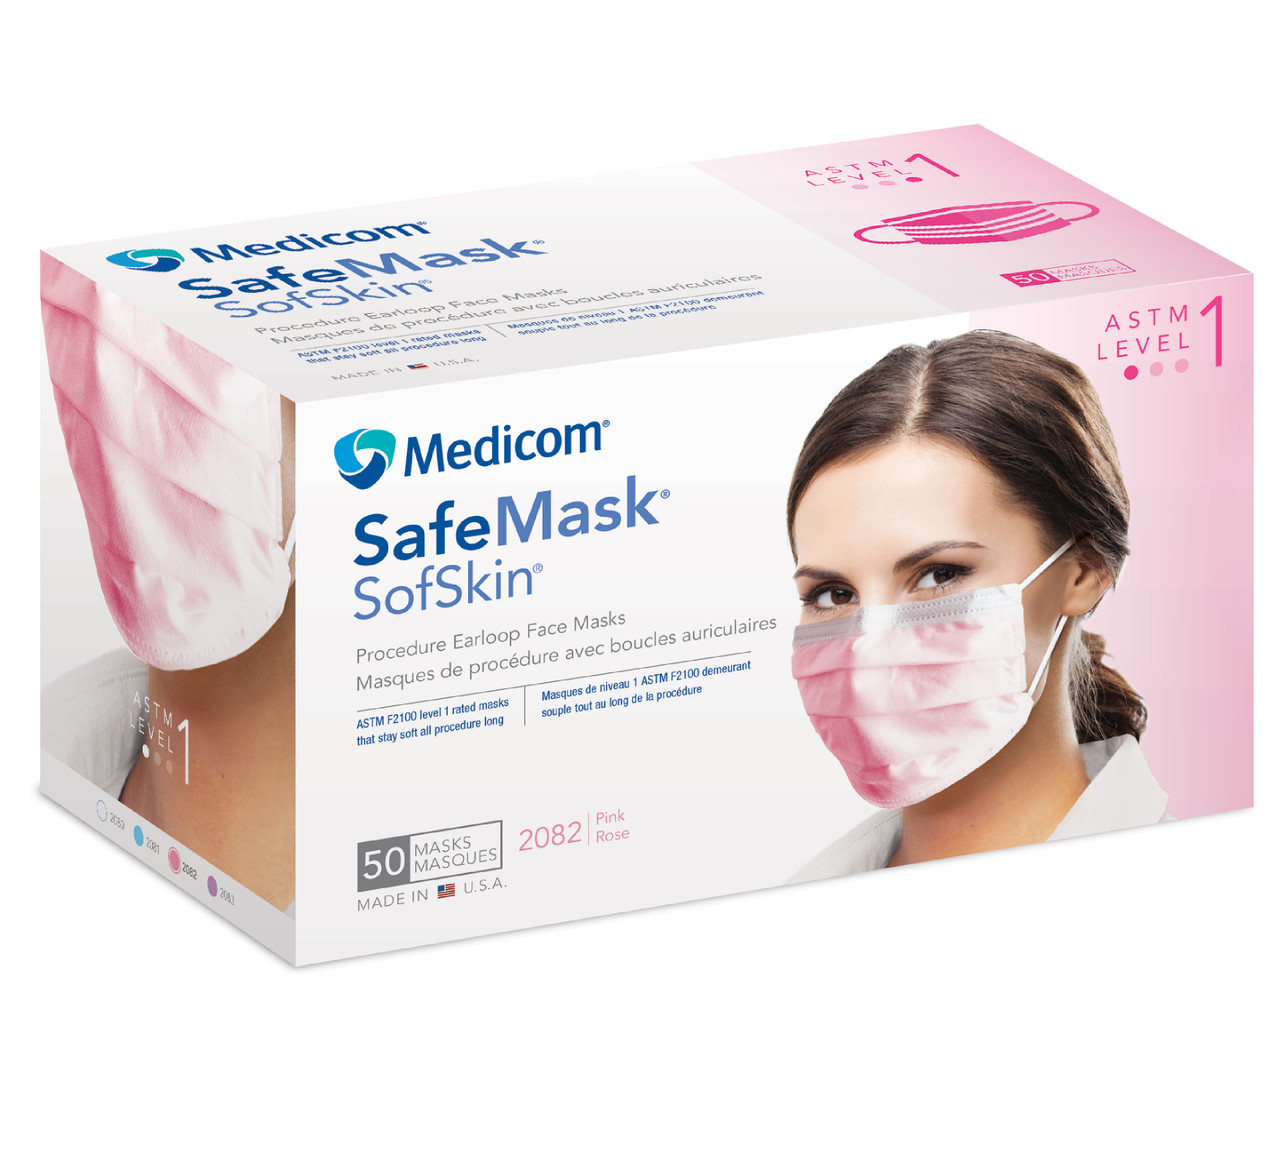 Medicom SafeMask SofSkin Face Mask Level 1, Pink, 50/bx 2082